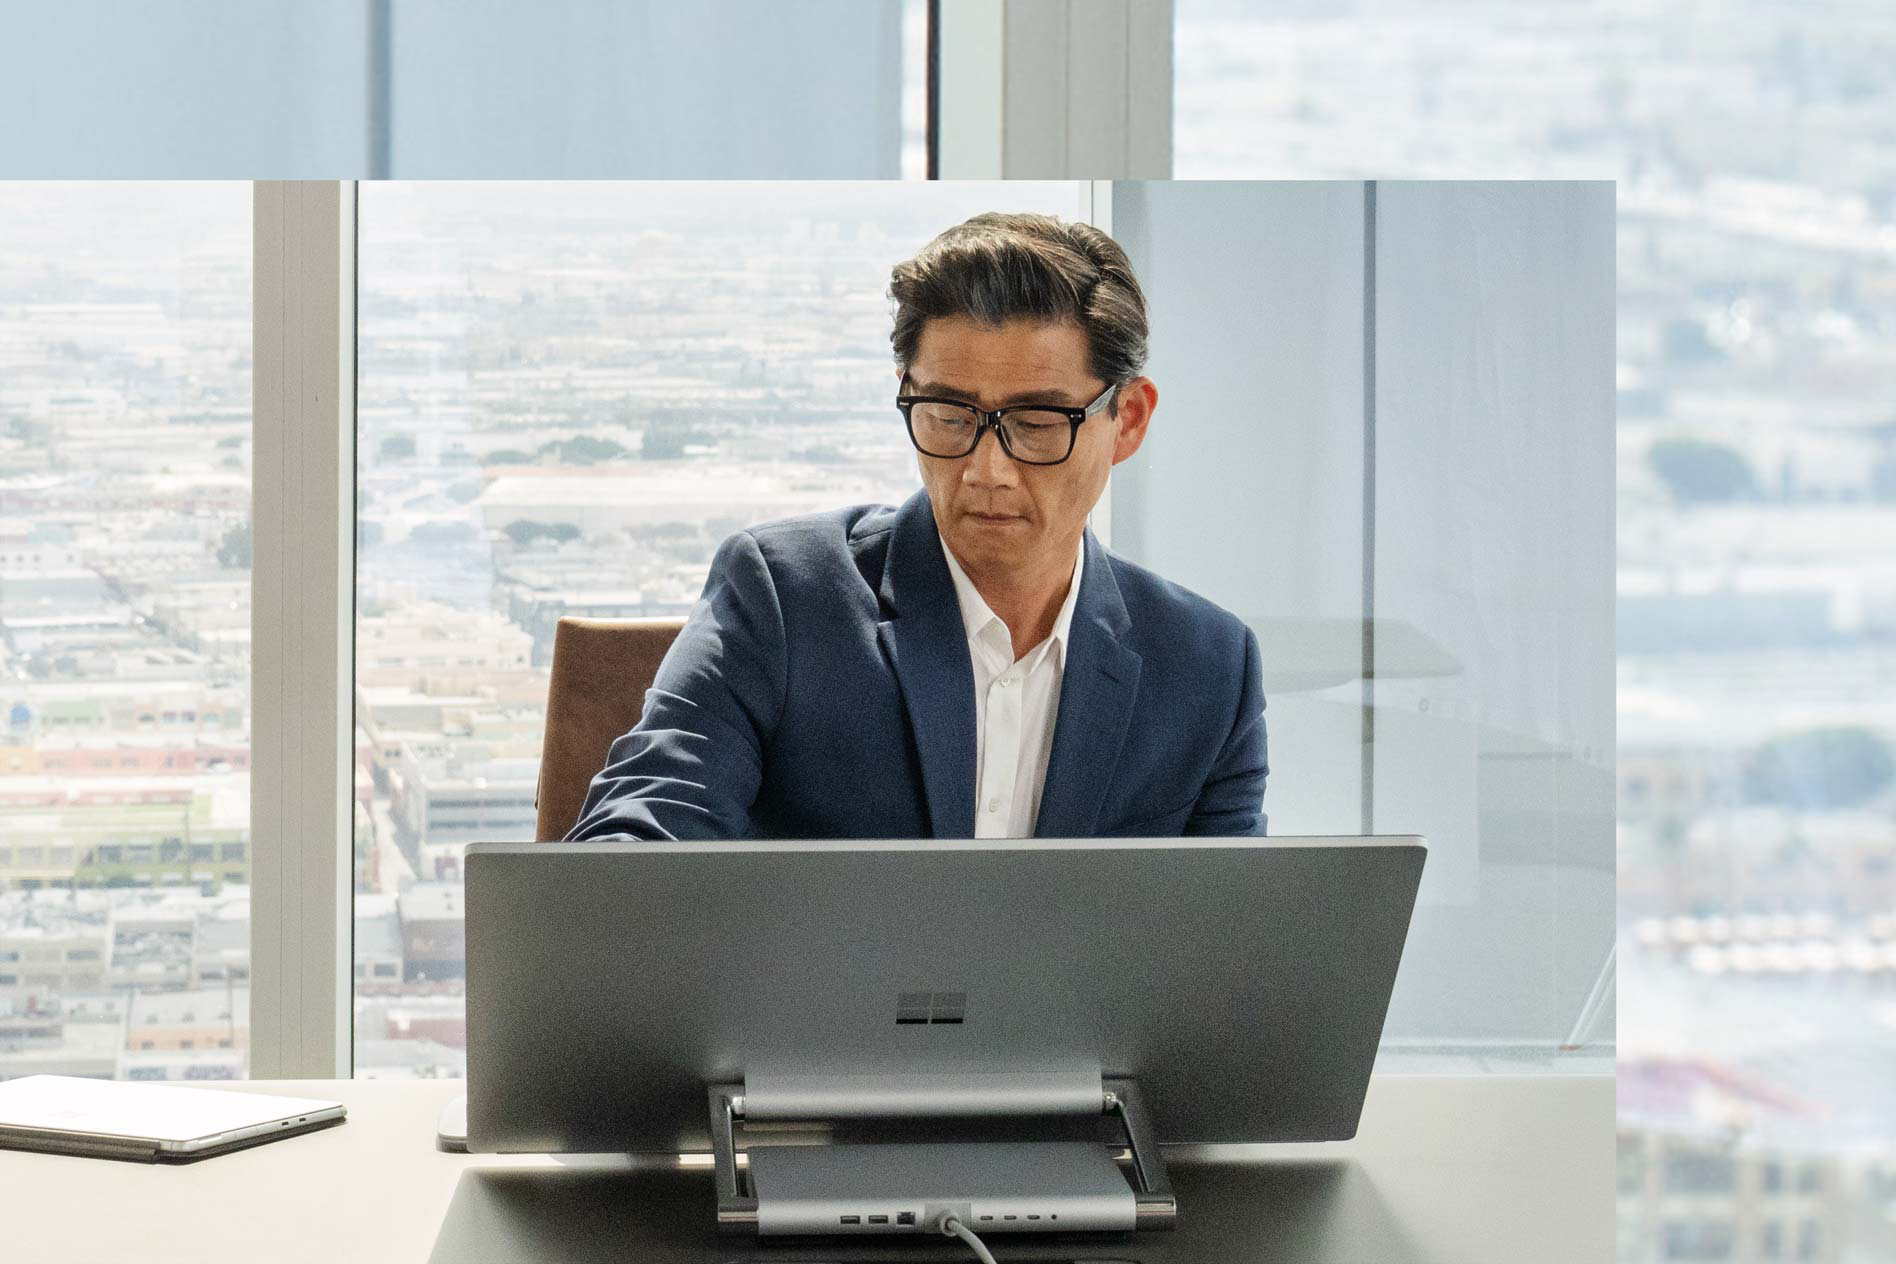 رجل يجلس أمام لابتوب Surface Studio 2+ الخاص به أمام نافذة تظهر جانبًا من المدينة.